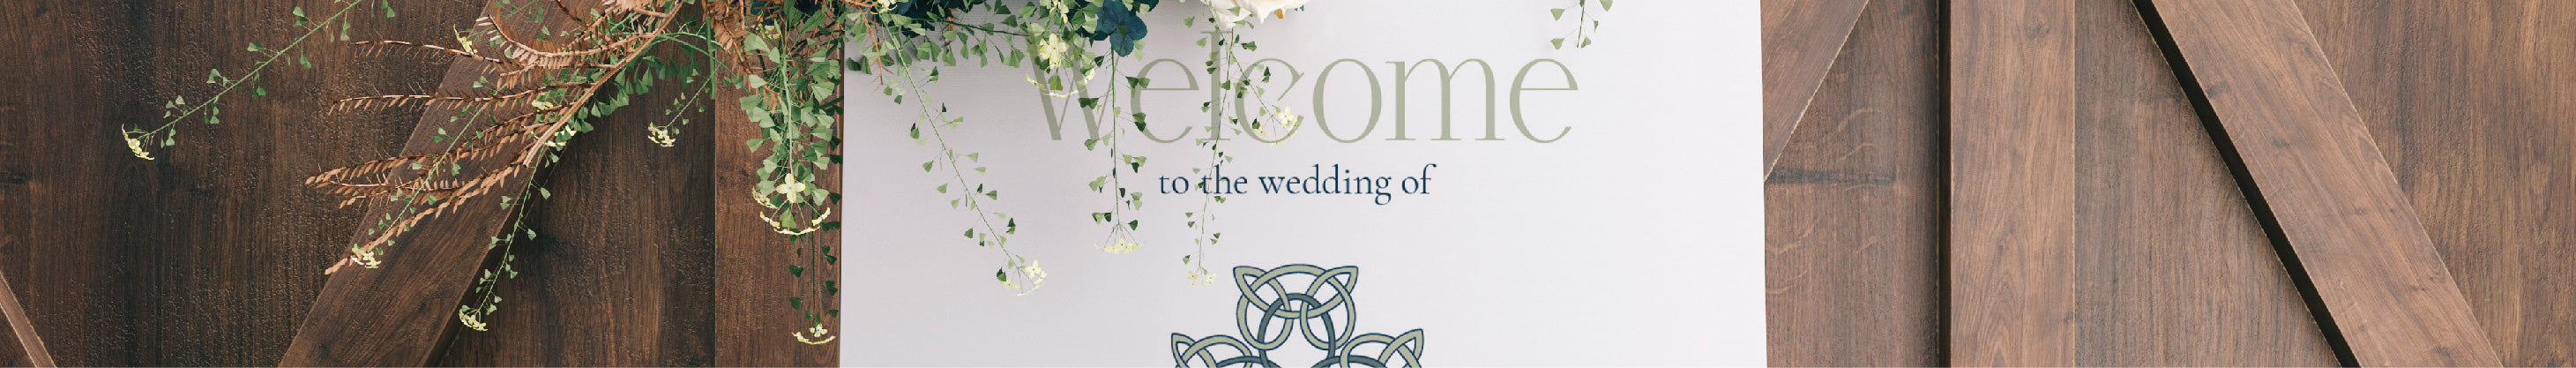 Irish Wedding Welcome Sign